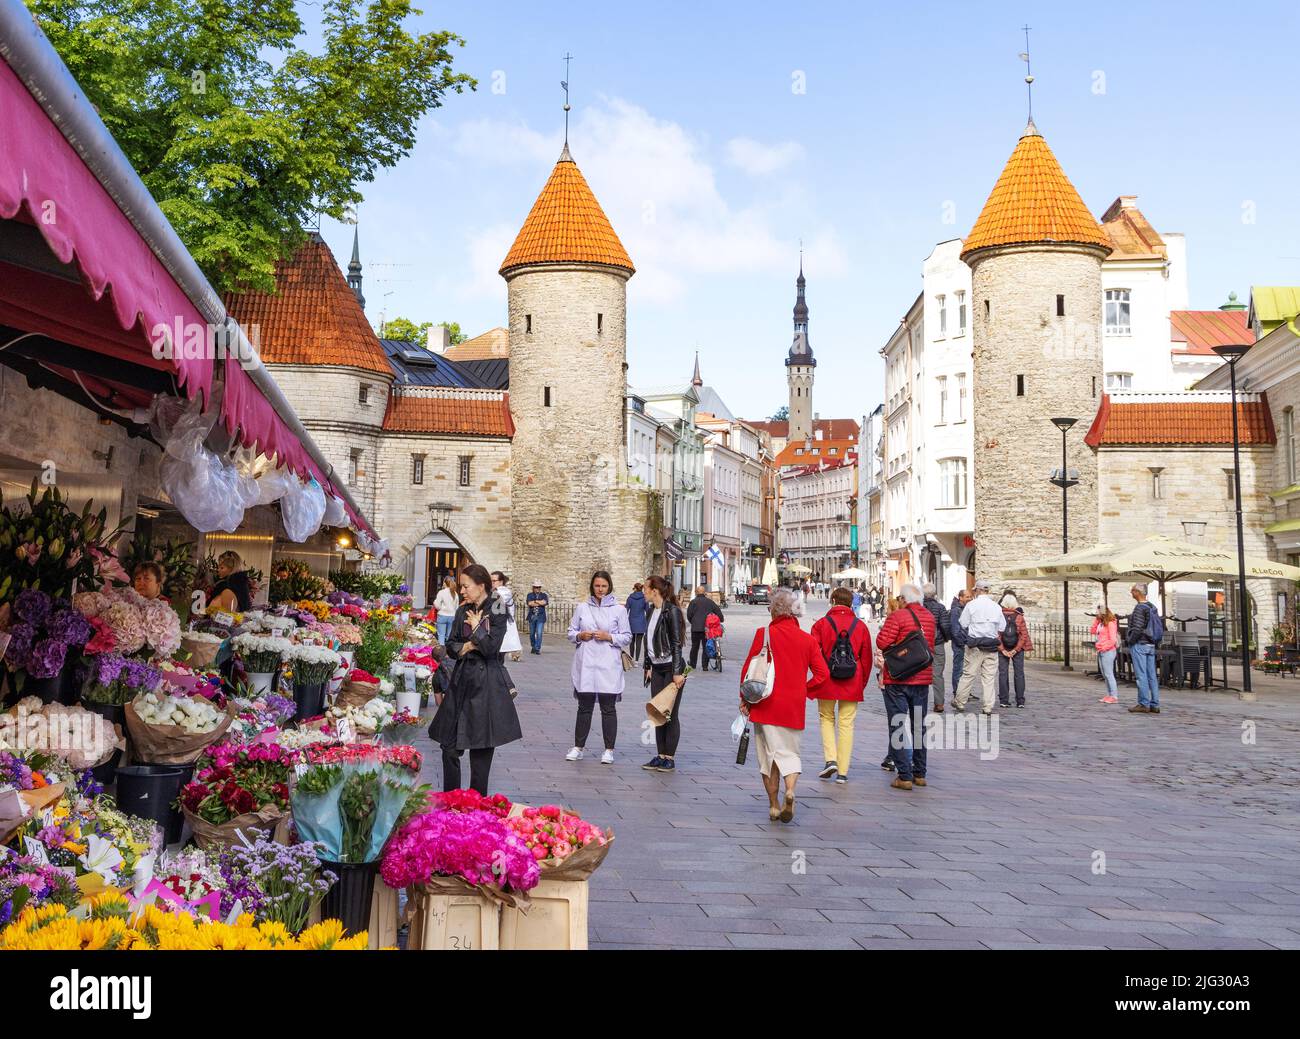 Viaggio in Estonia; Città Vecchia di Tallinn; la porta Viru, parte delle mura medievali della città del 14th secolo, e il mercato dei fiori, Tallinn Estonia Europe Foto Stock